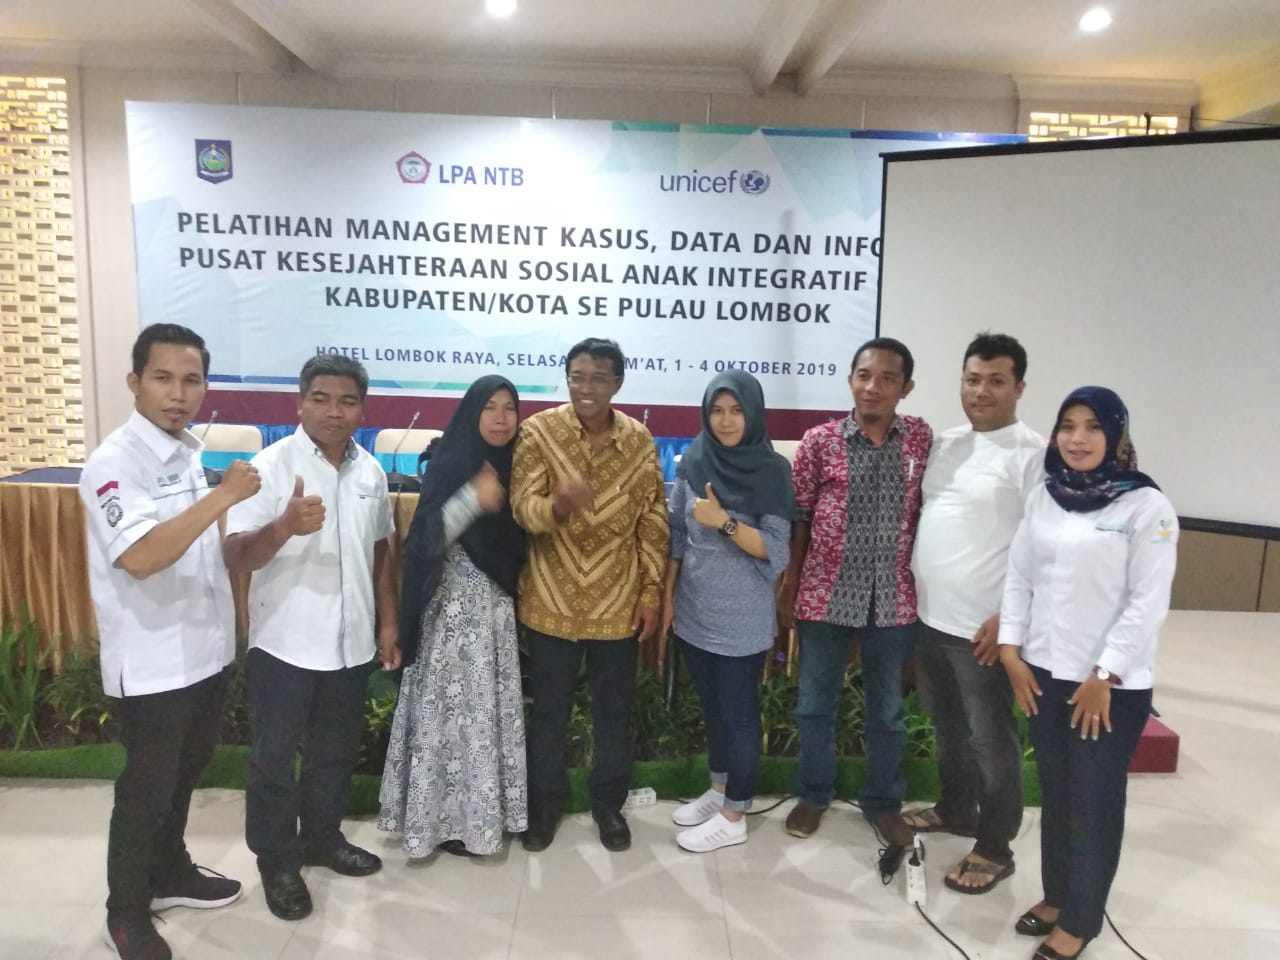 TIM Sekretariat Pusat Kesejahteraan Sosial Anak Integratif (PKSAI) Kabupaten Lombok Timur Mengikuti Kegiatan Pelatihan Manajemen Kasus, data dan Informasi